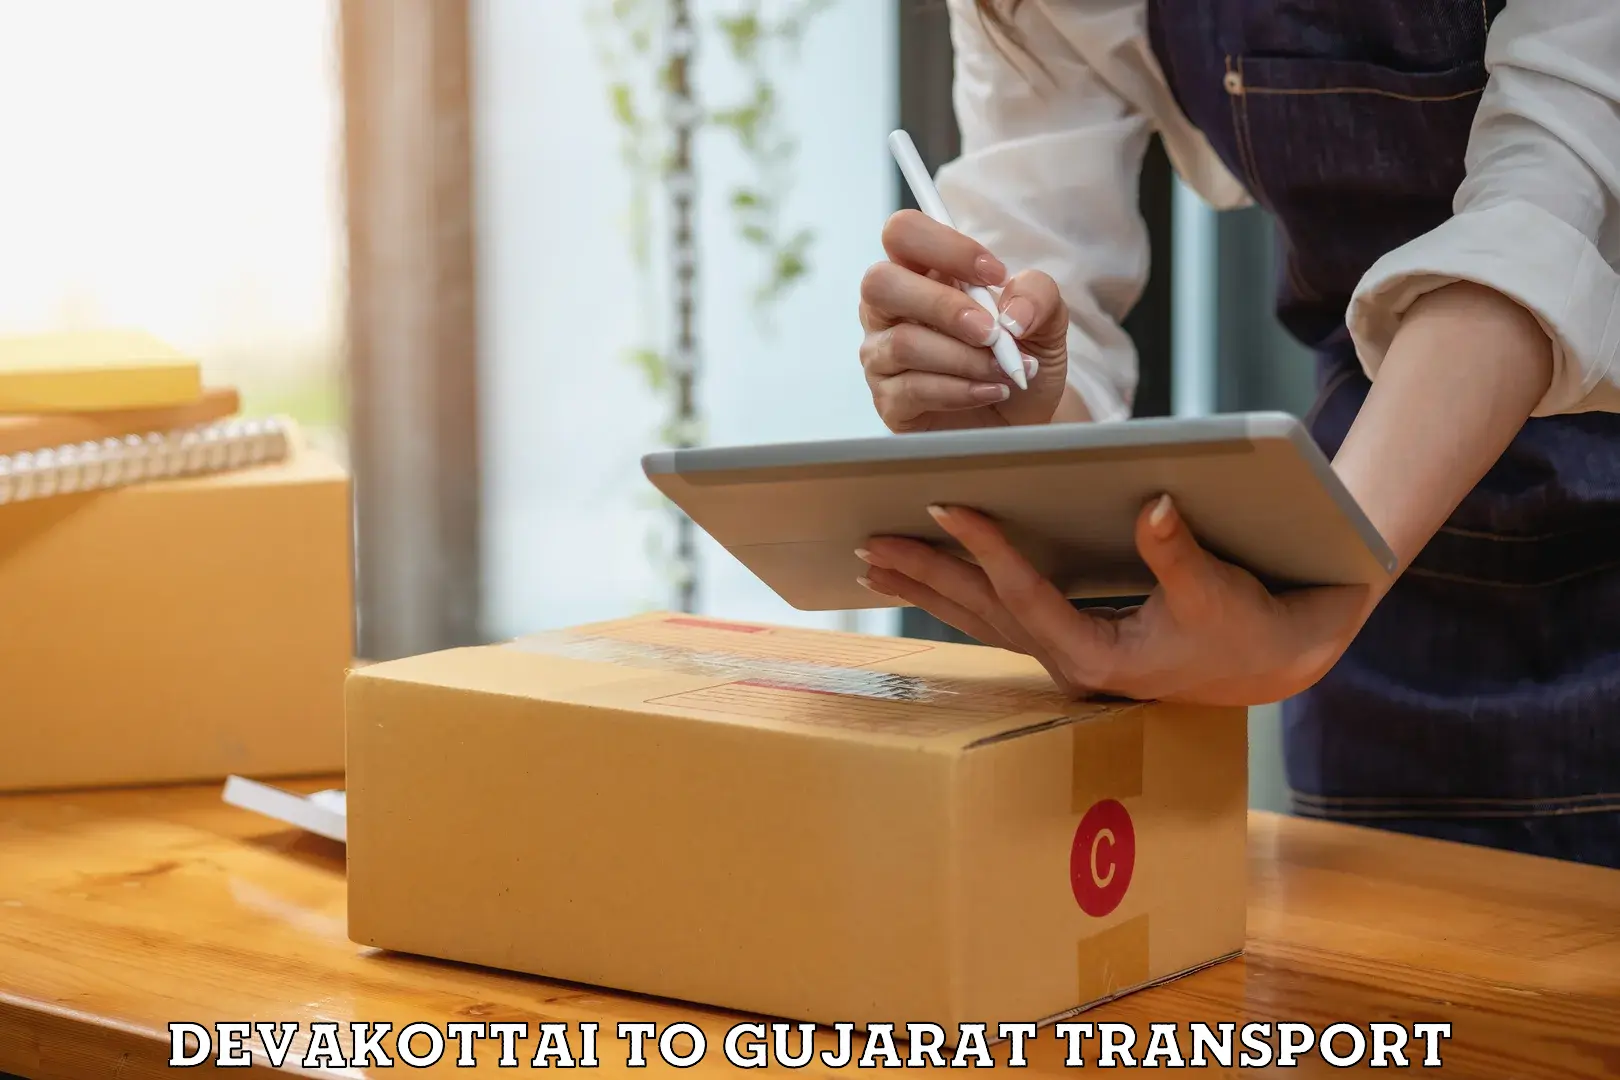 Parcel transport services Devakottai to Gujarat